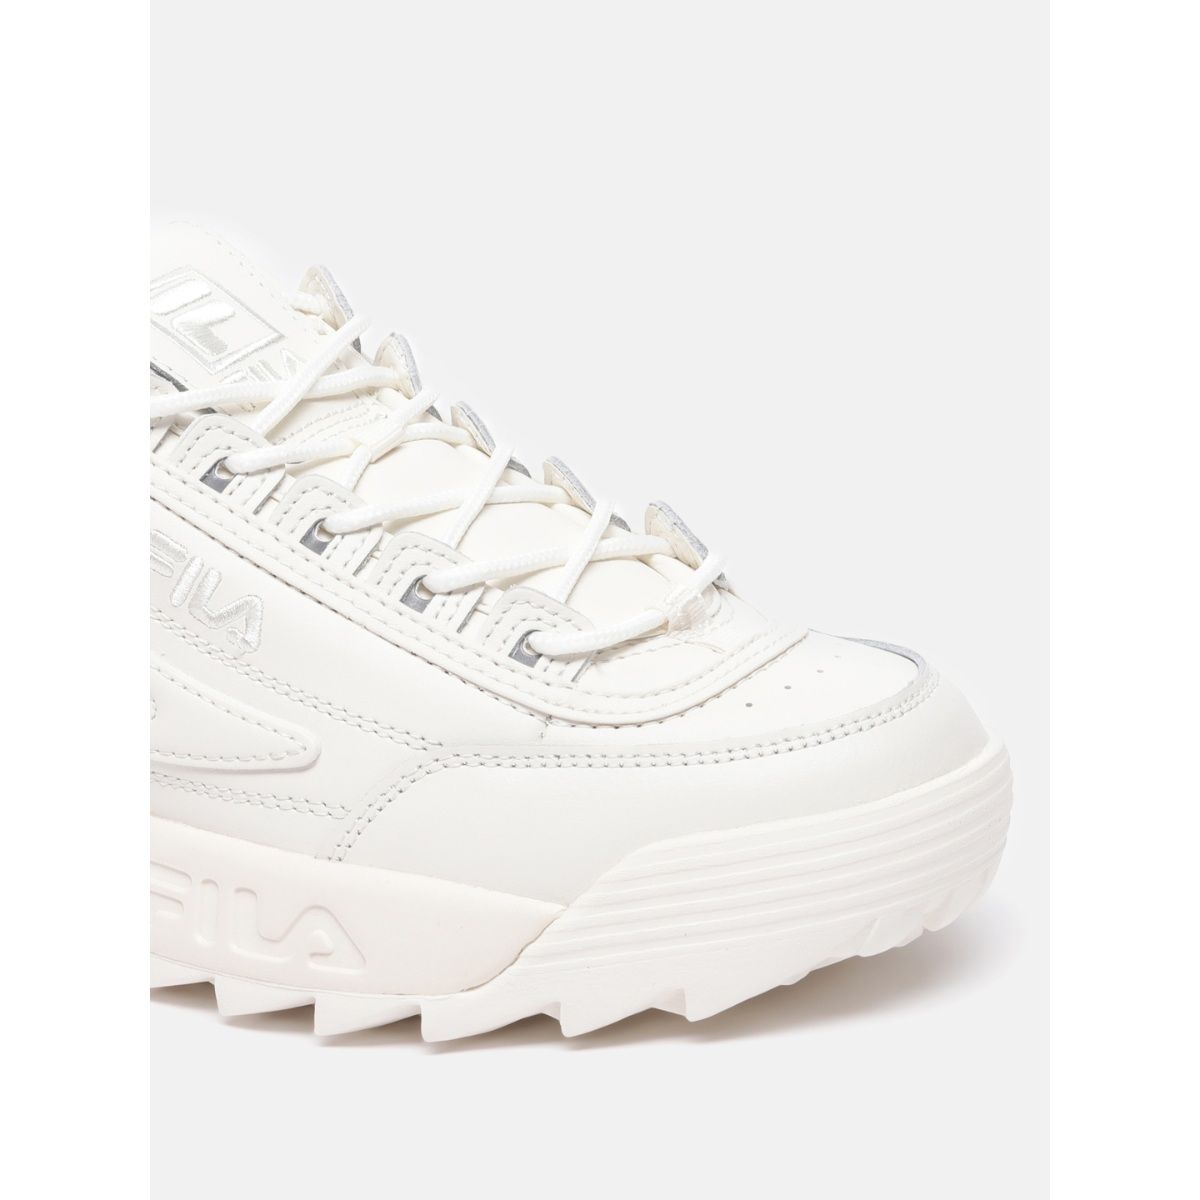 Buy FILA Disruptor Ii Exp Women White Sneakers Online